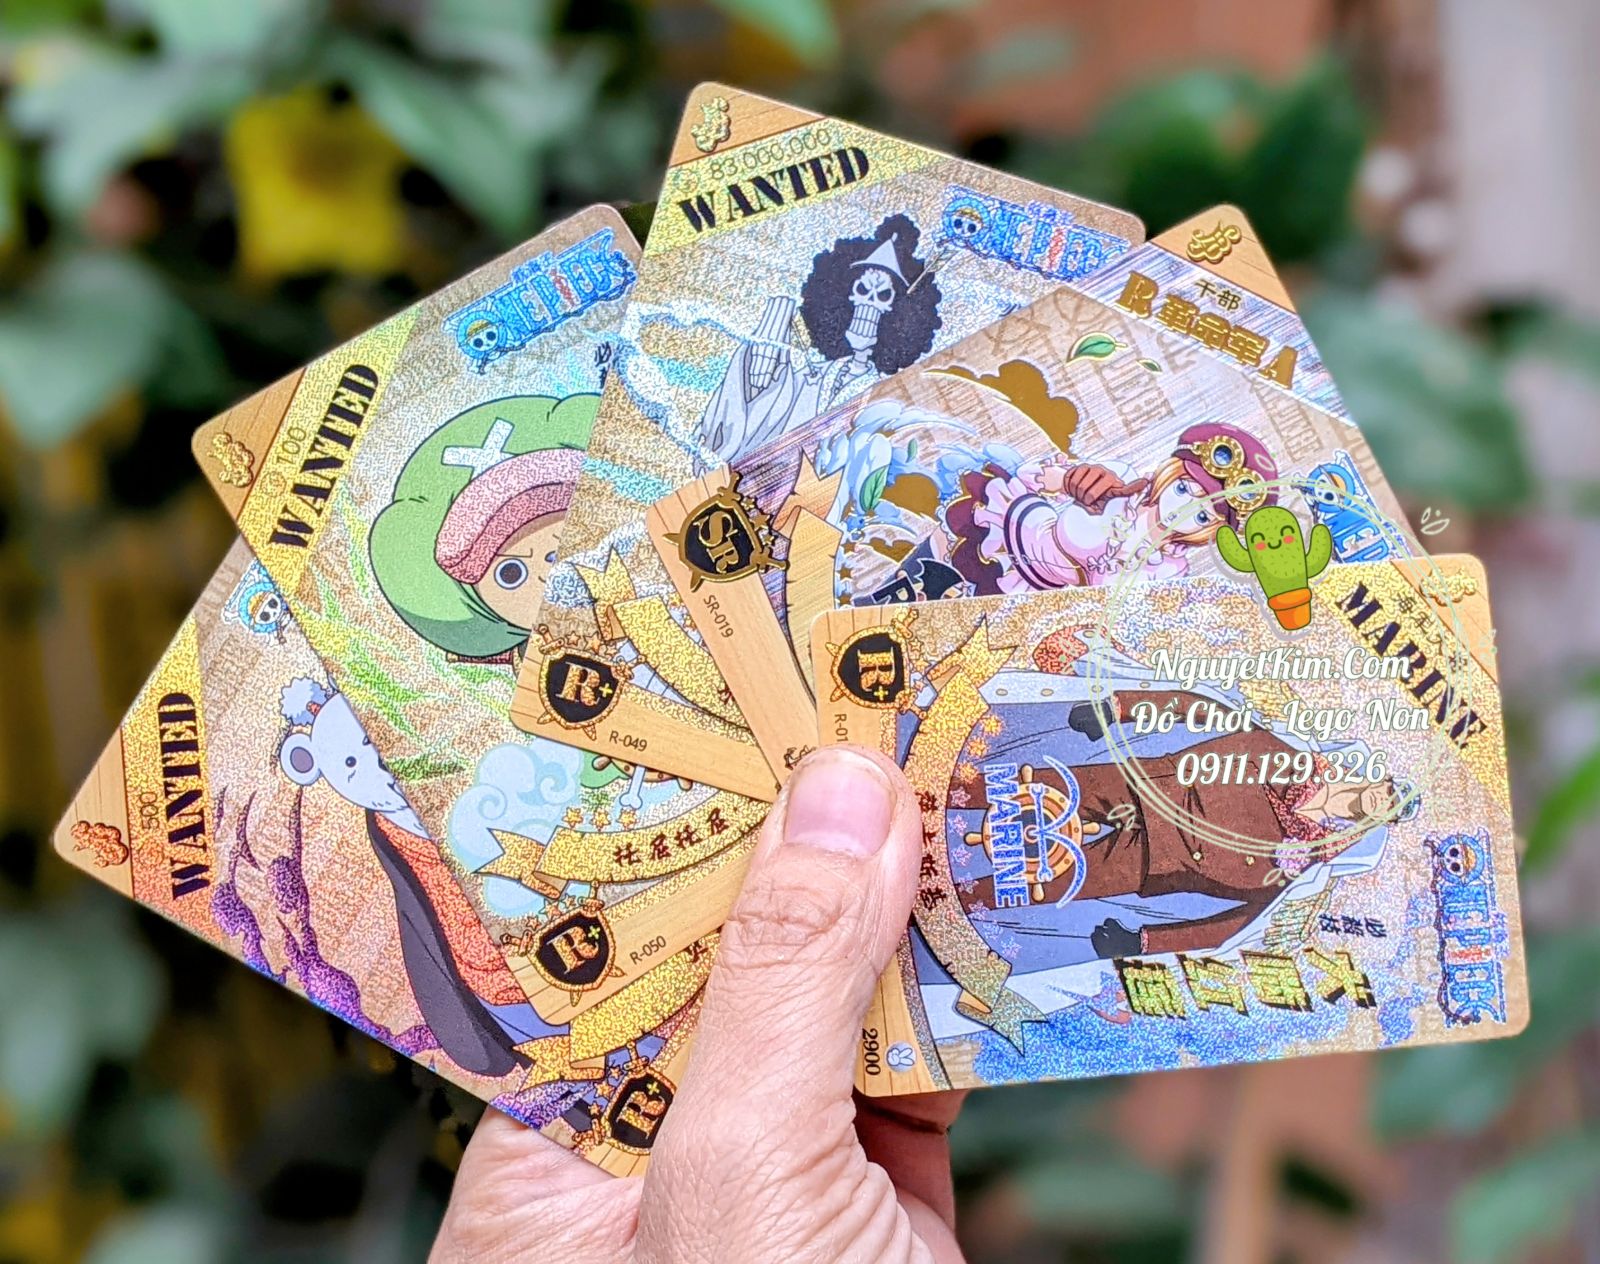 Thẻ Nhân Phẩm One Piece Wano Quốc Thẻ Bài Hải Tặc Siêu Vip Pro - Hộp 30 Pack 150 Thẻ Cực Chất